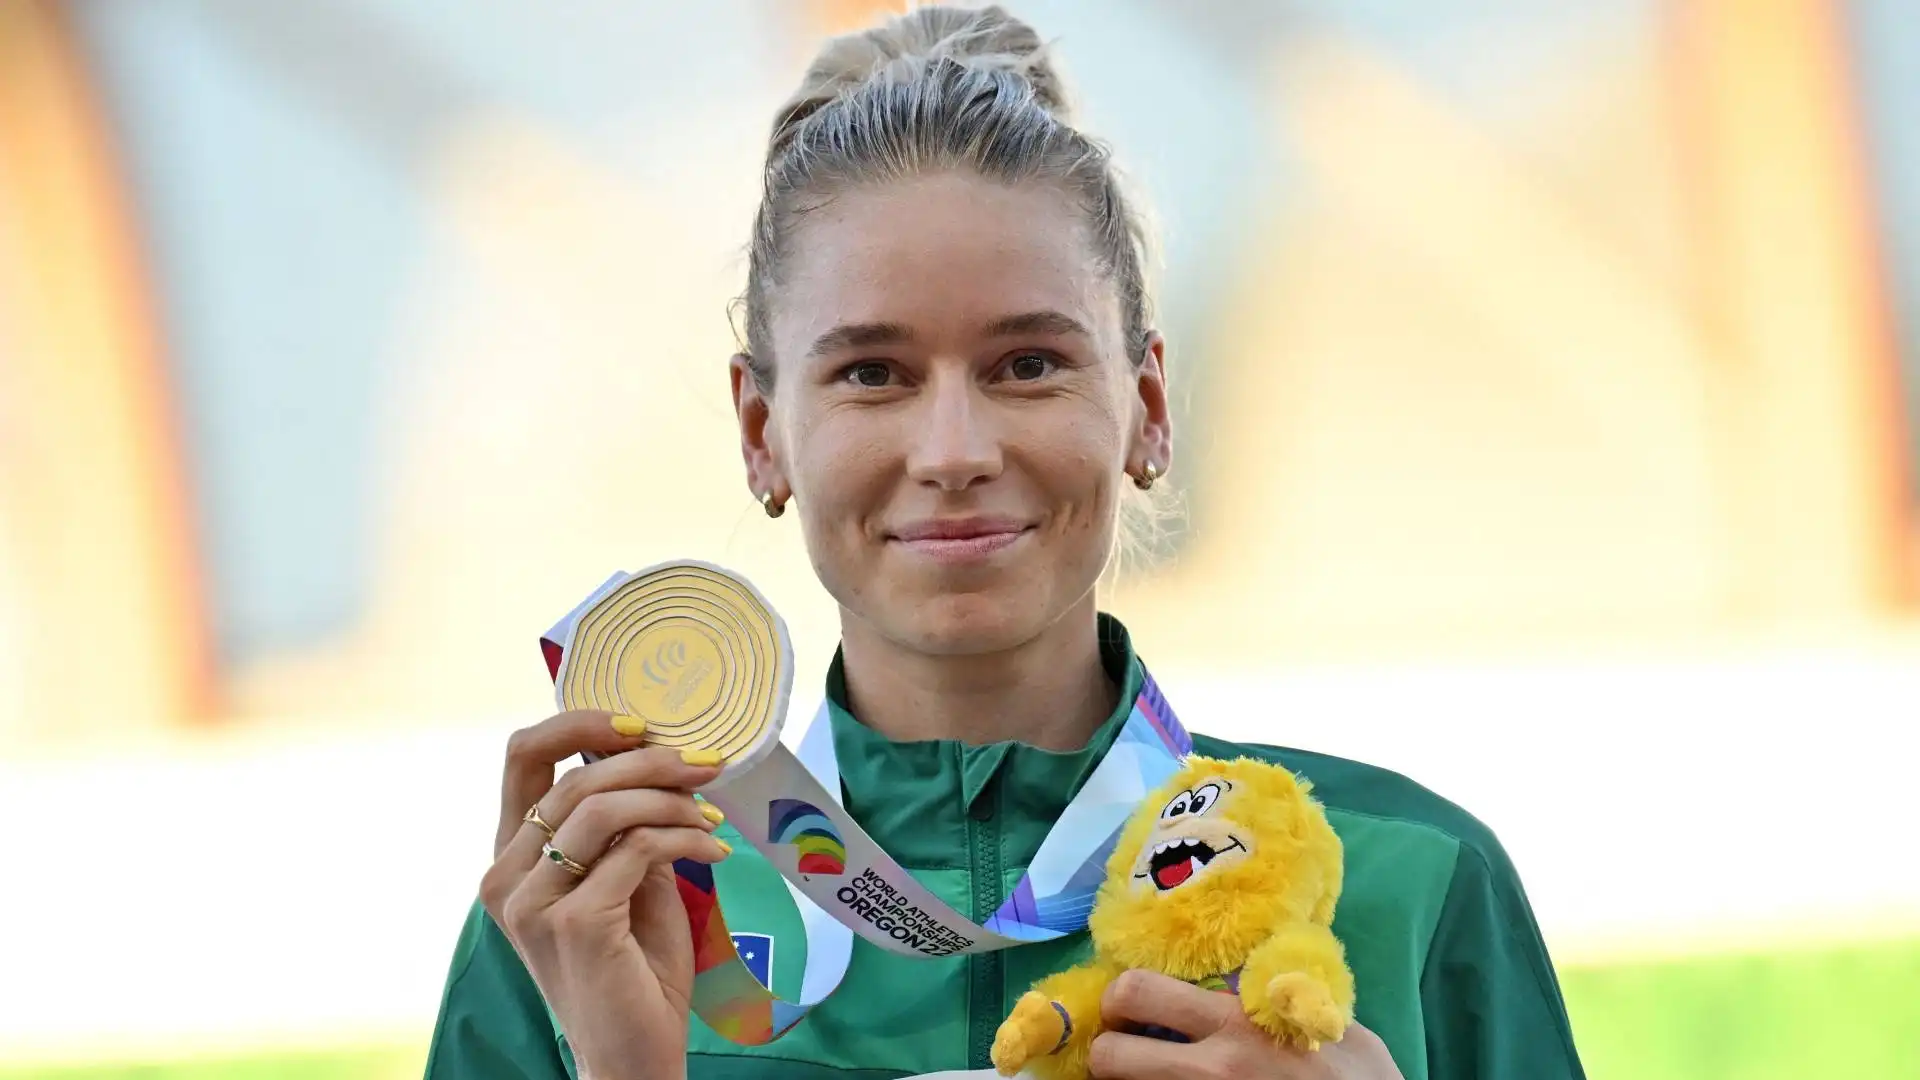 Molte vittorie, per la splendida atleta australiana